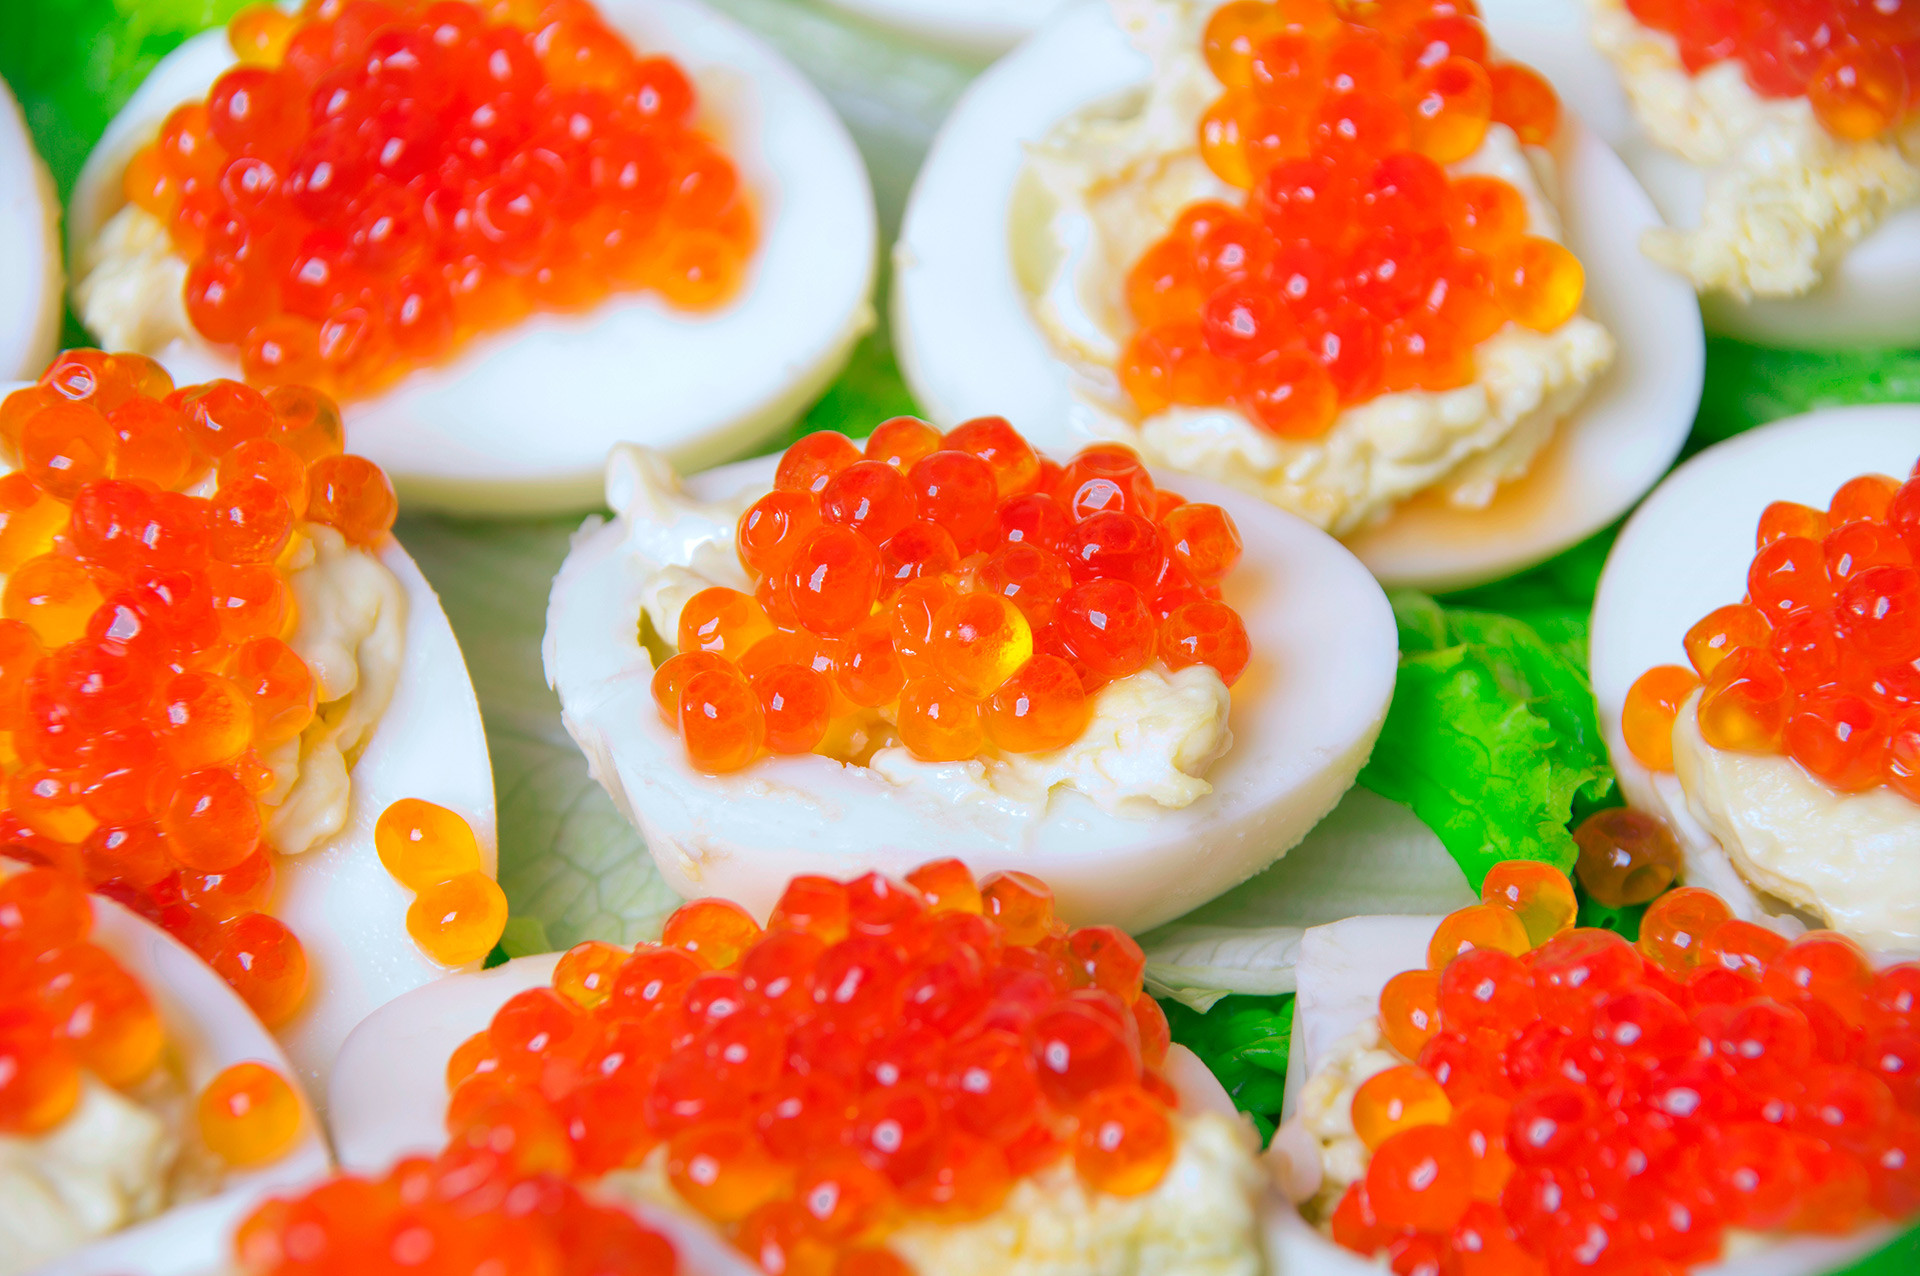 Huevos rellenos con caviar rojo y pimentón en un plato para la mesa de  pascua de aperitivo, vista superior, espacio de copia. plato tradicional  para felices fiestas de pascua.